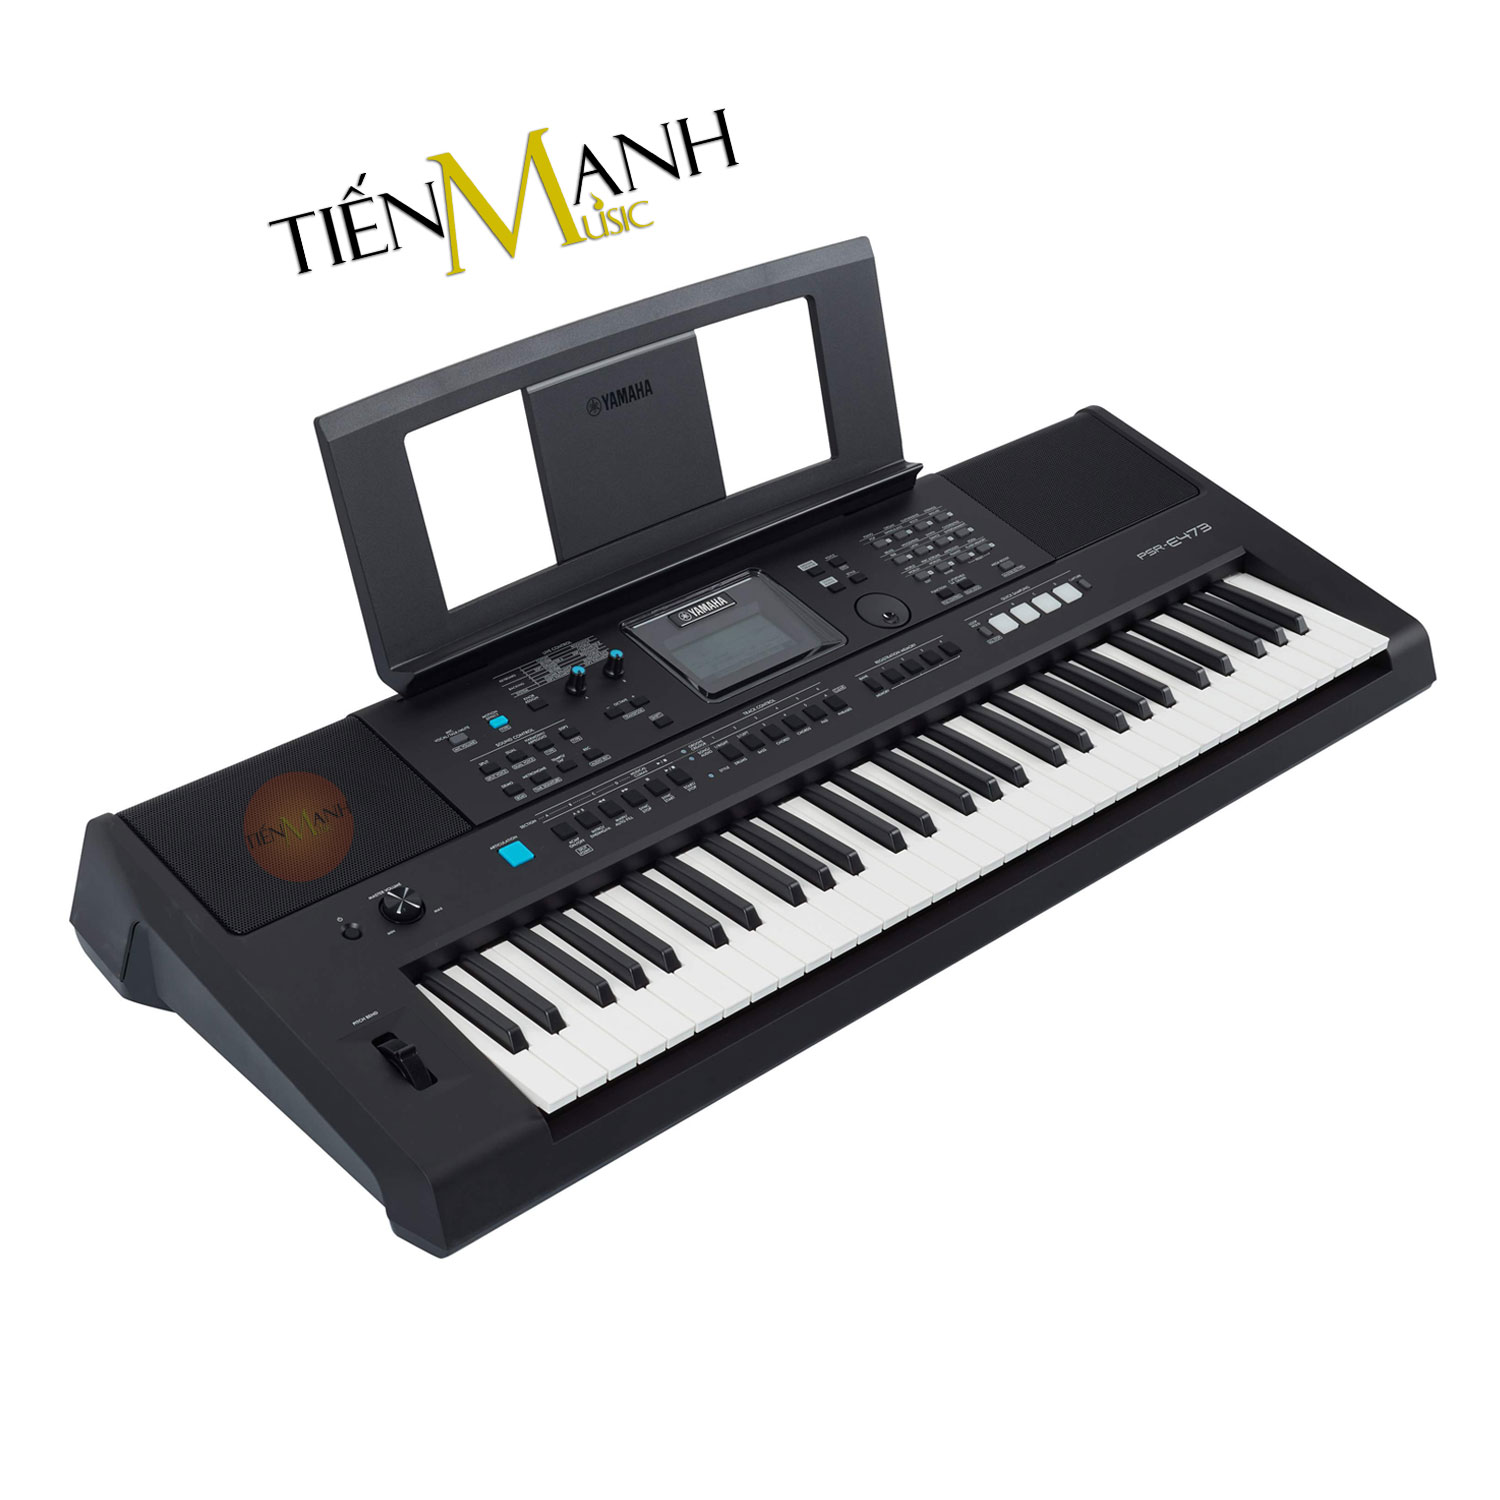 Kich-thuoc-Bo-Dan-Organ-Yamaha-PSR-E473.jpg